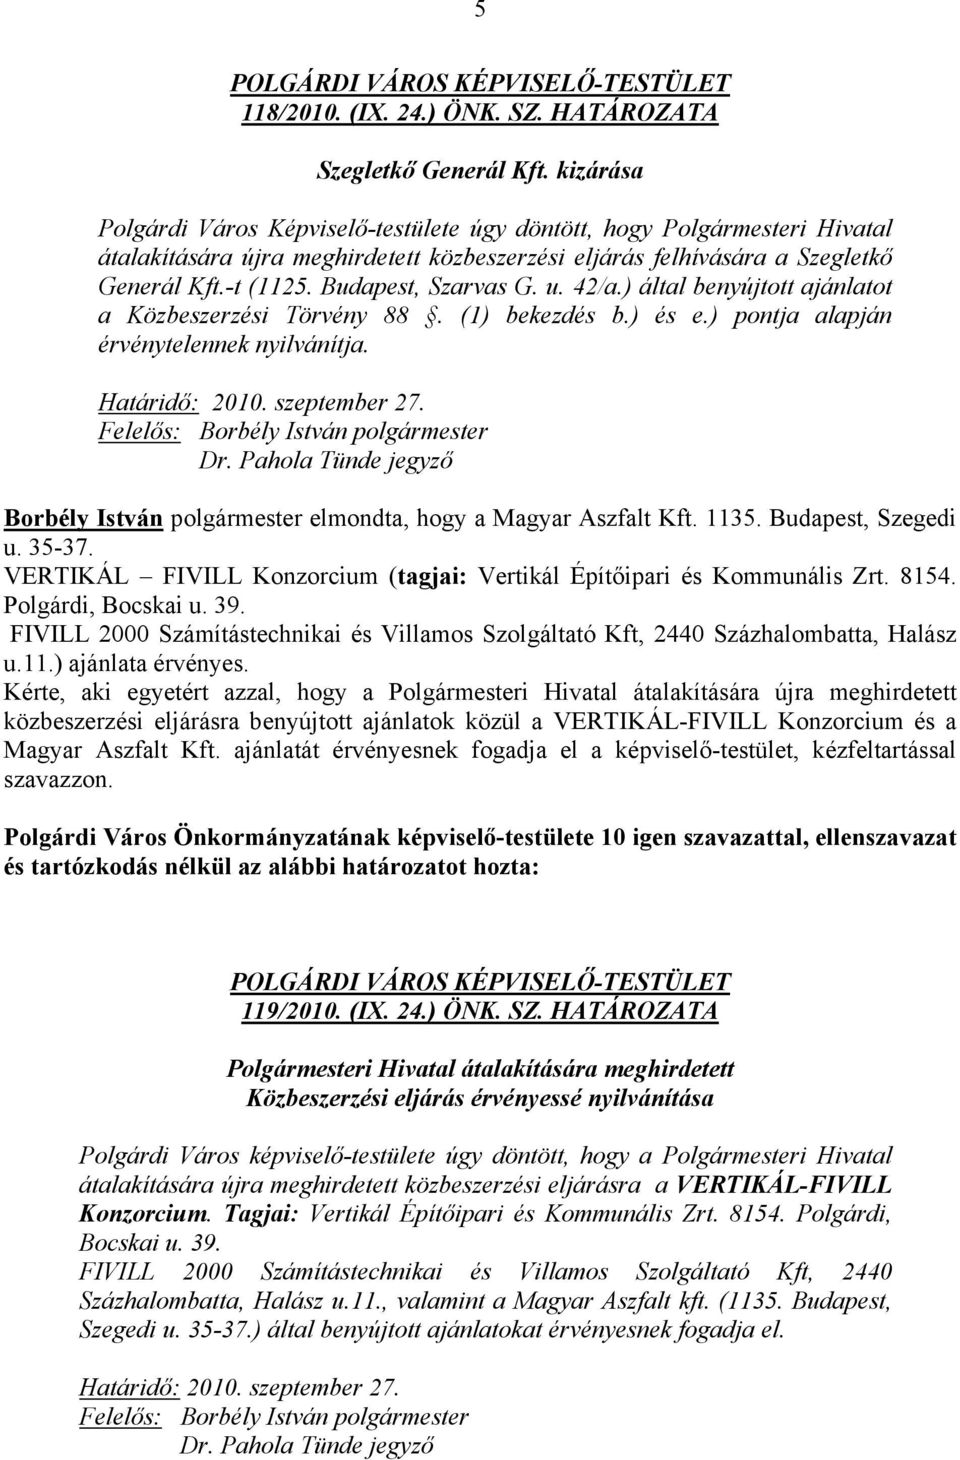 Budapest, Szarvas G. u. 42/a.) által benyújtott ajánlatot a Közbeszerzési Törvény 88. (1) bekezdés b.) és e.) pontja alapján érvénytelennek nyilvánítja. Határidő: 2010. szeptember 27.